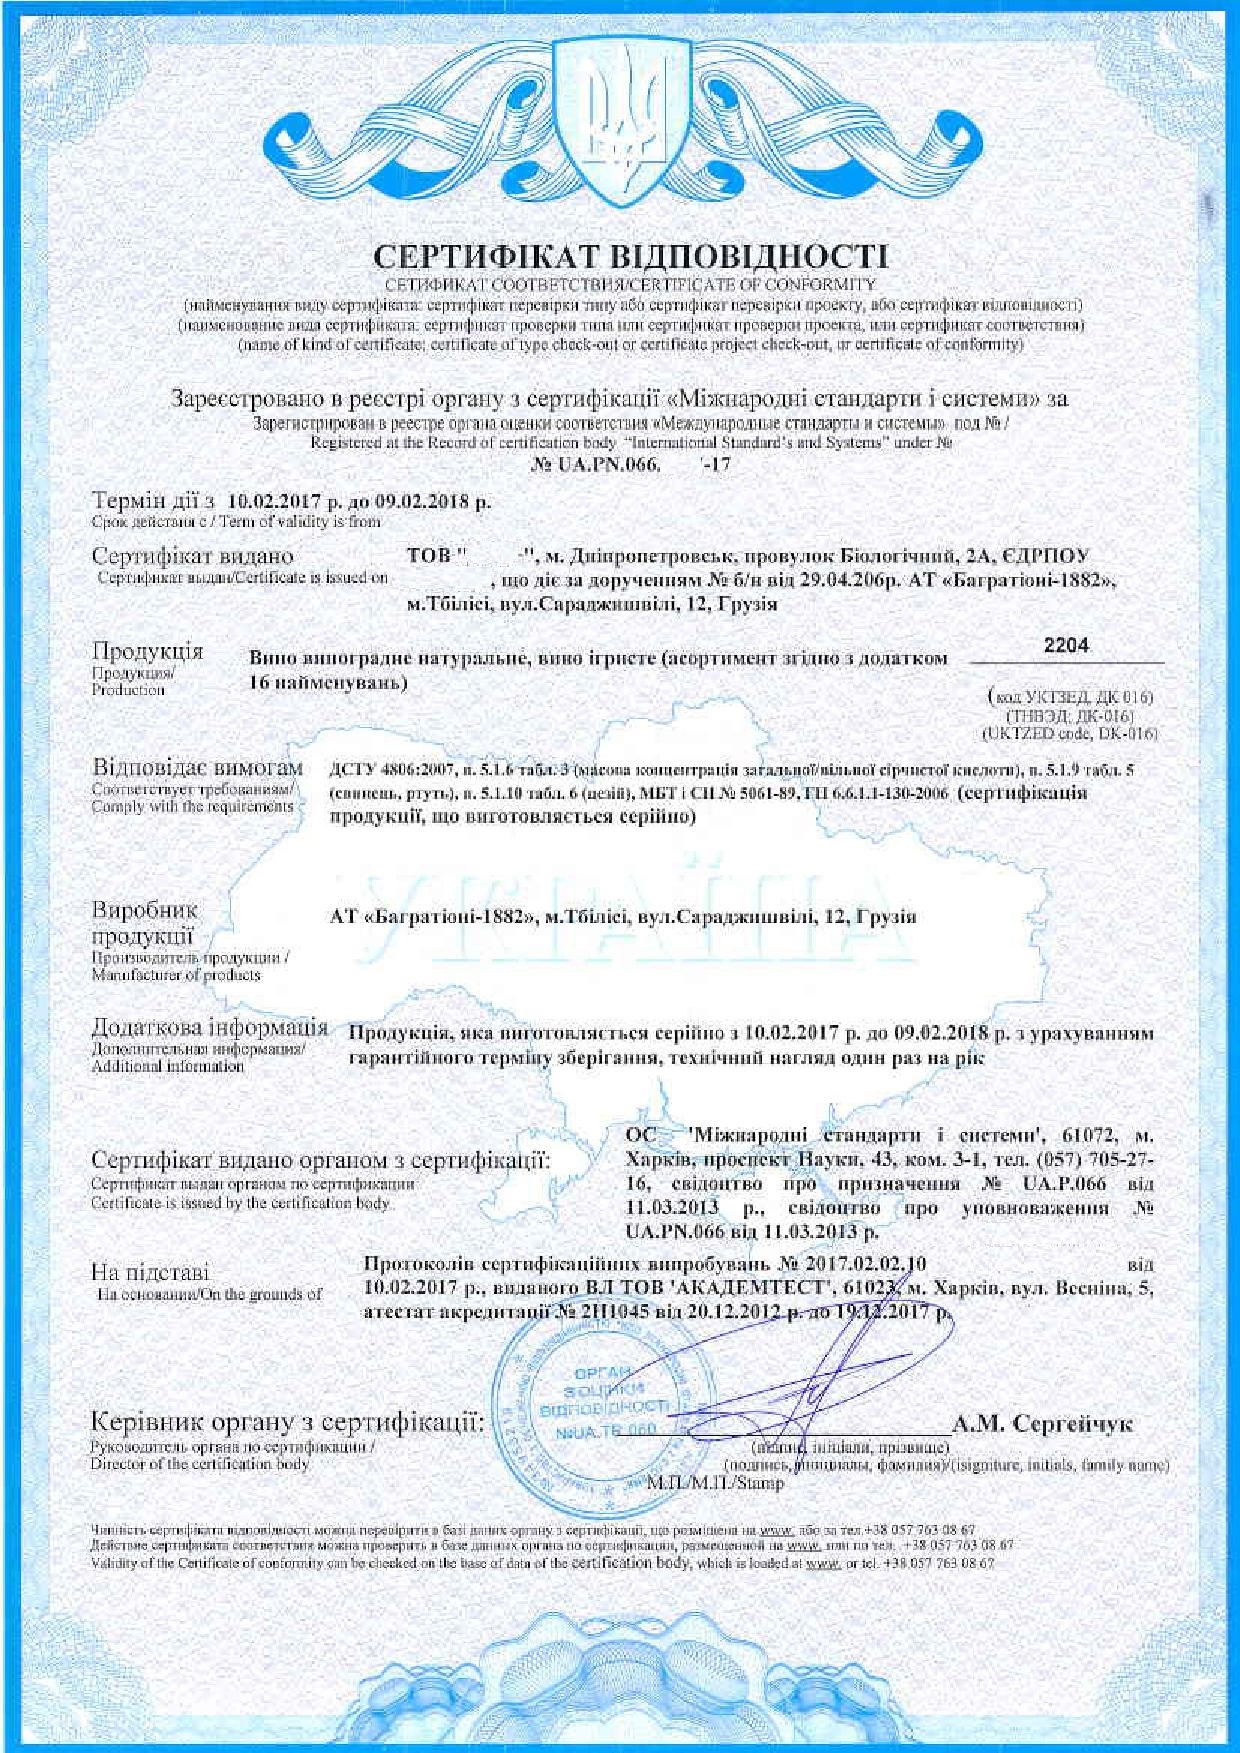 Сертифікація алкогольної продукції та сировини для виробництва алкогольних напоїв